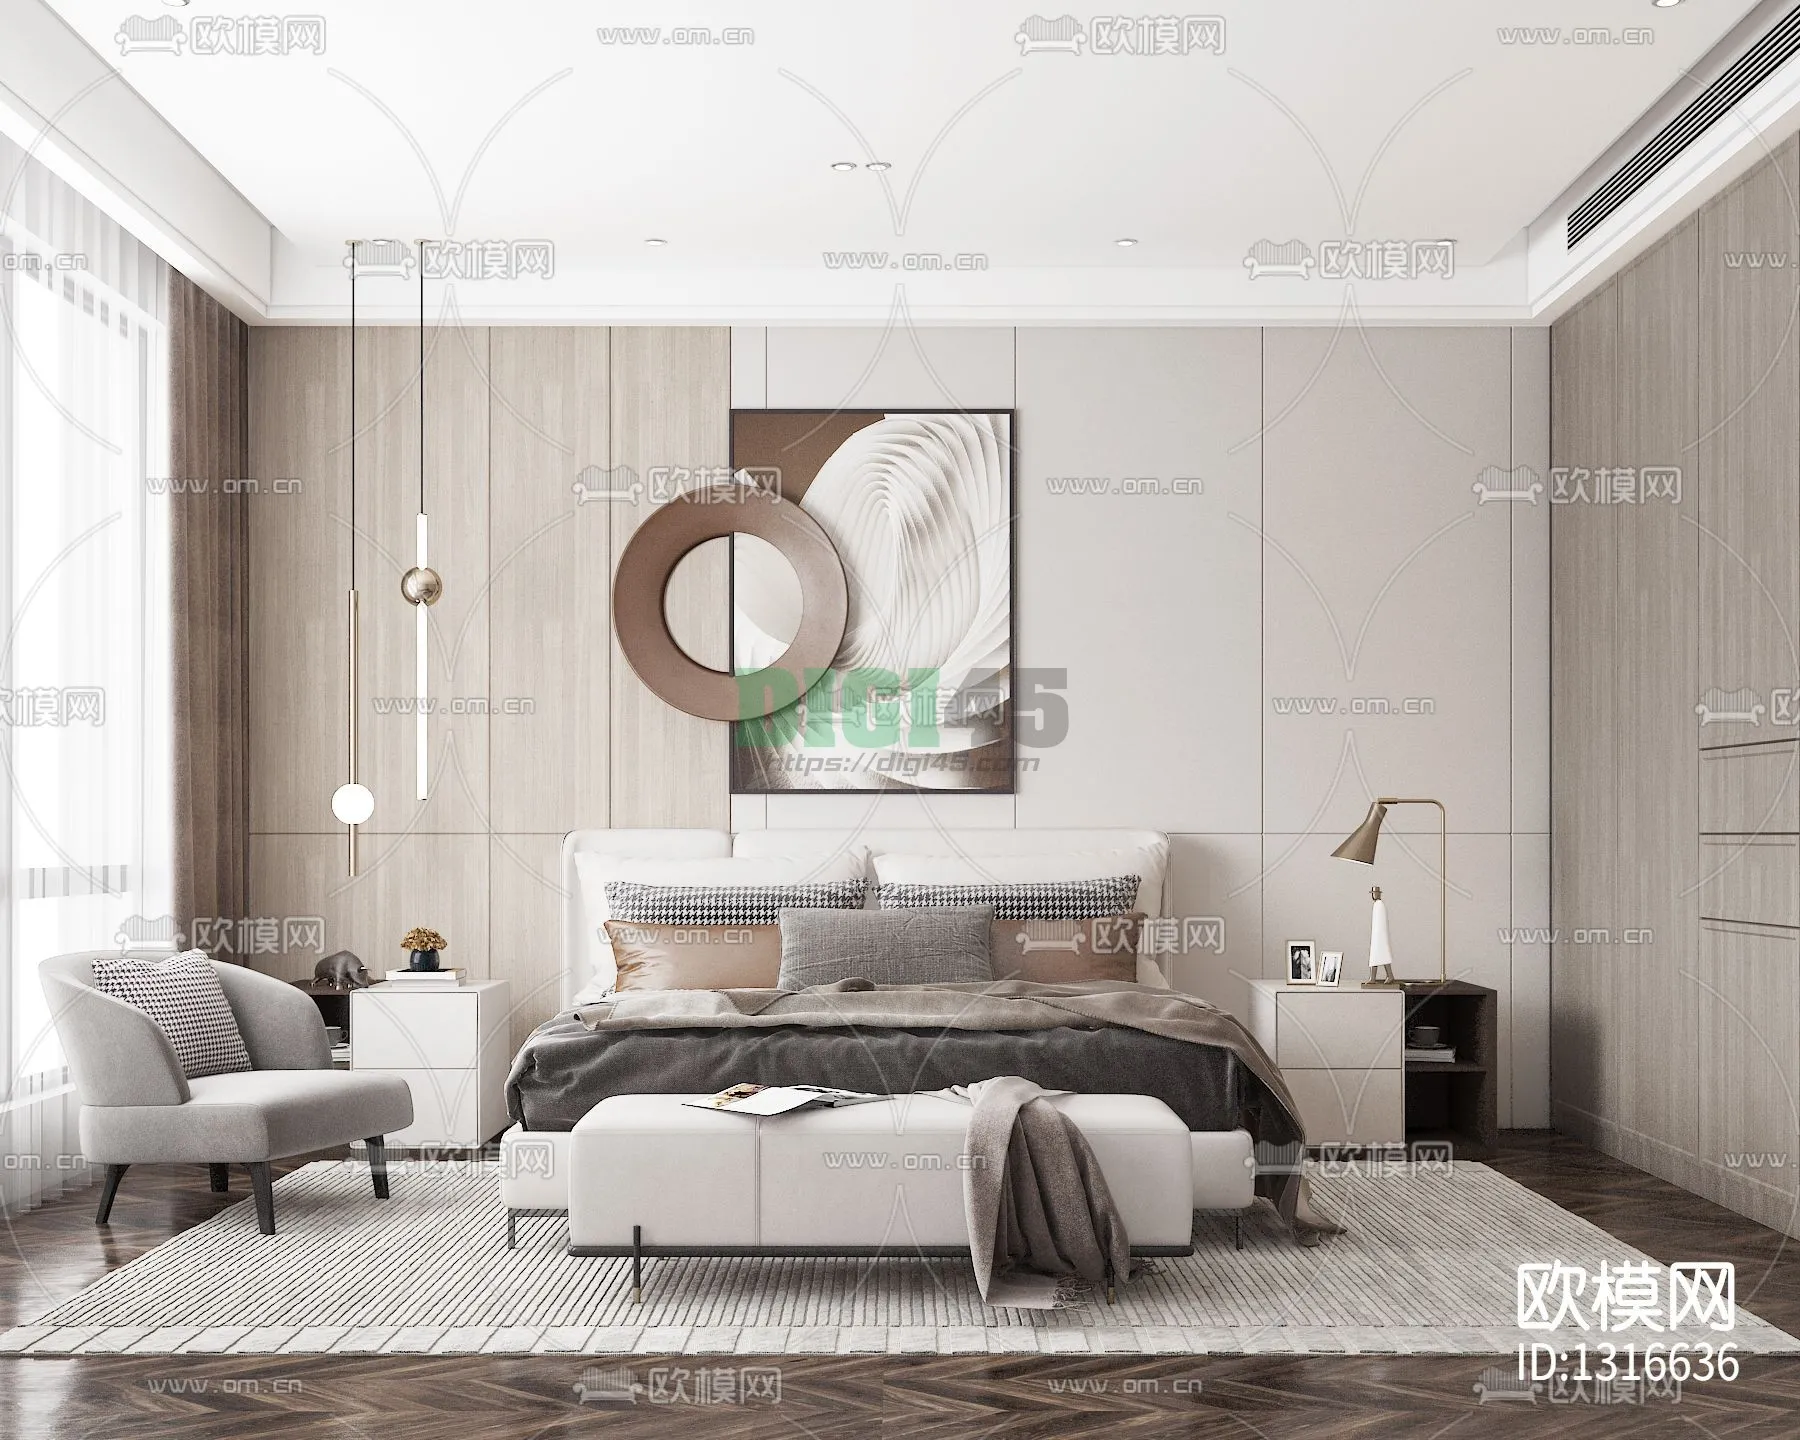 Bedroom 3D Scenes – 1147